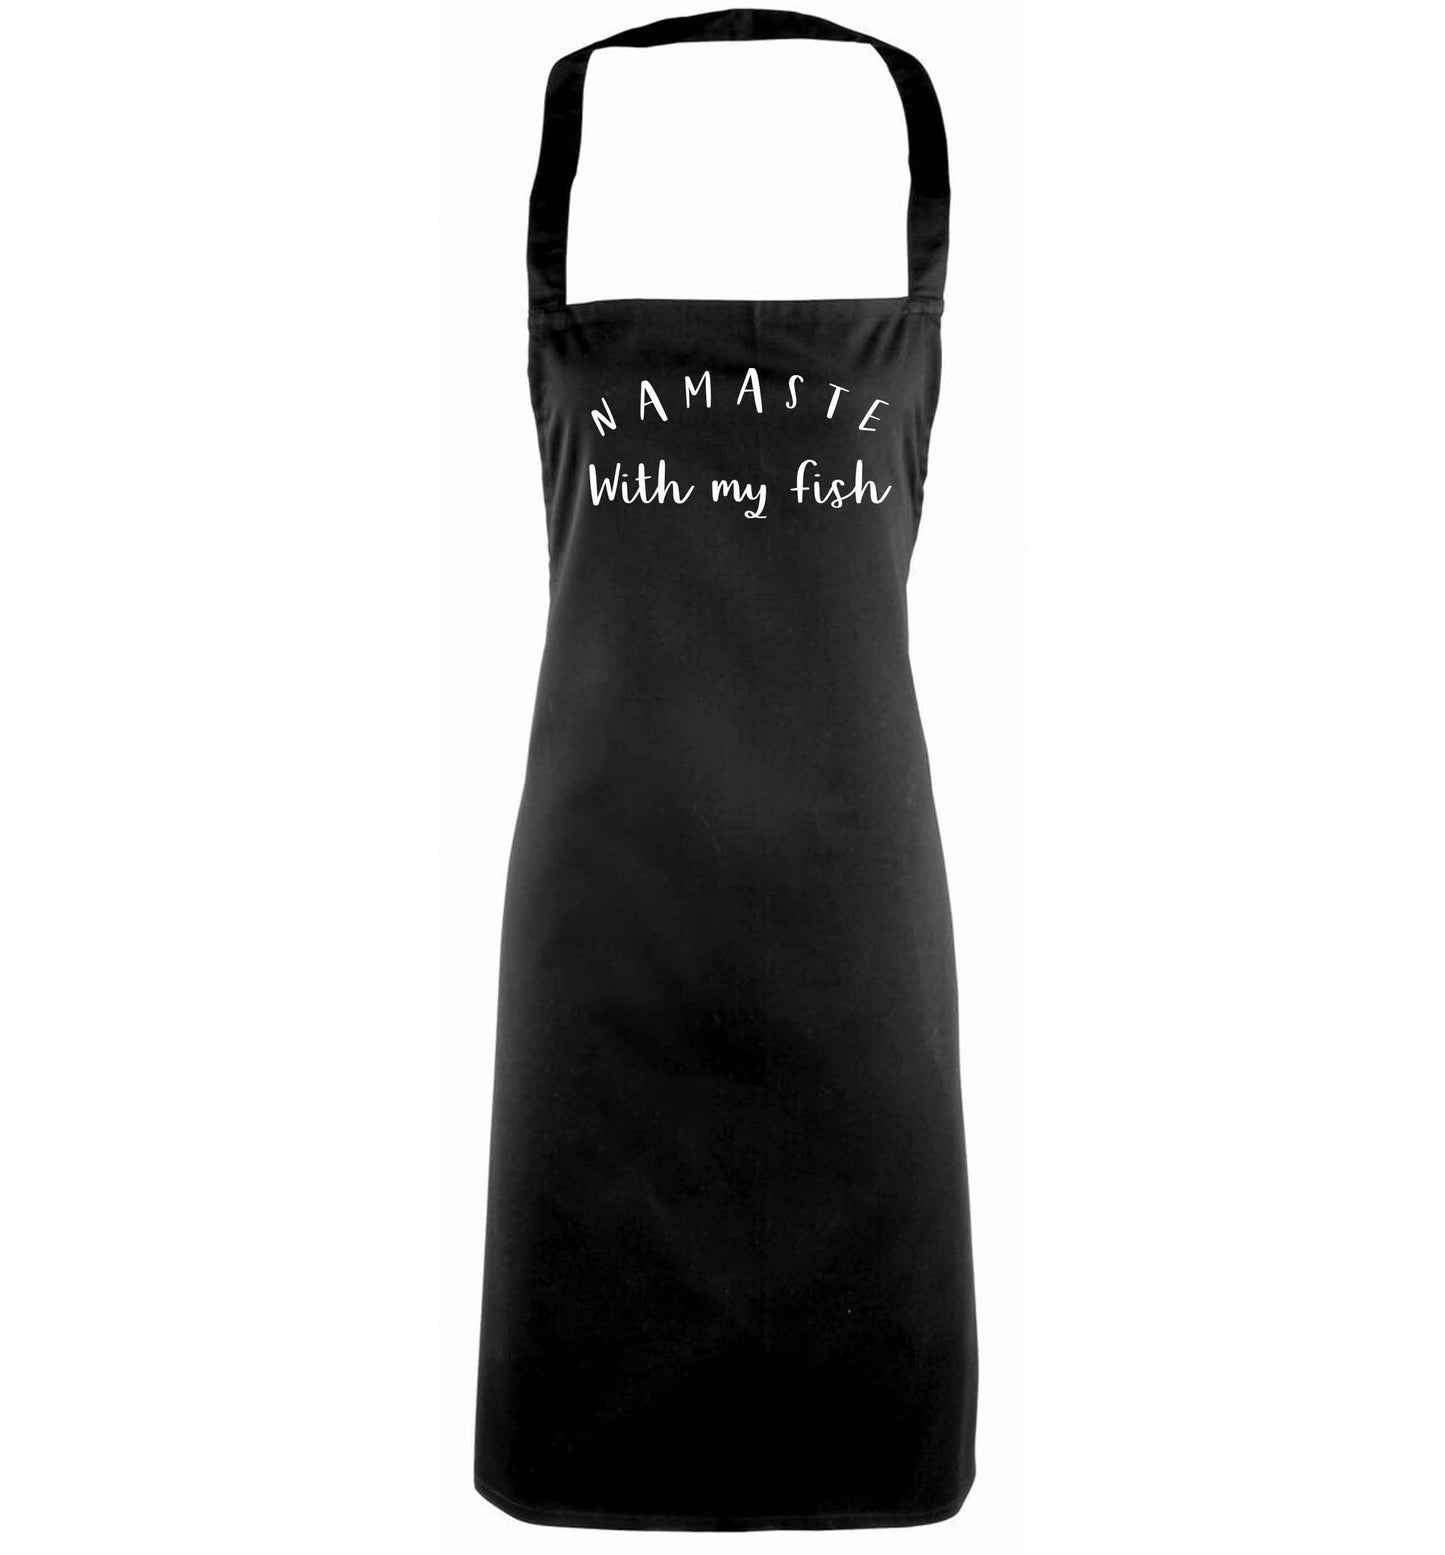 Namaste with my fish black apron